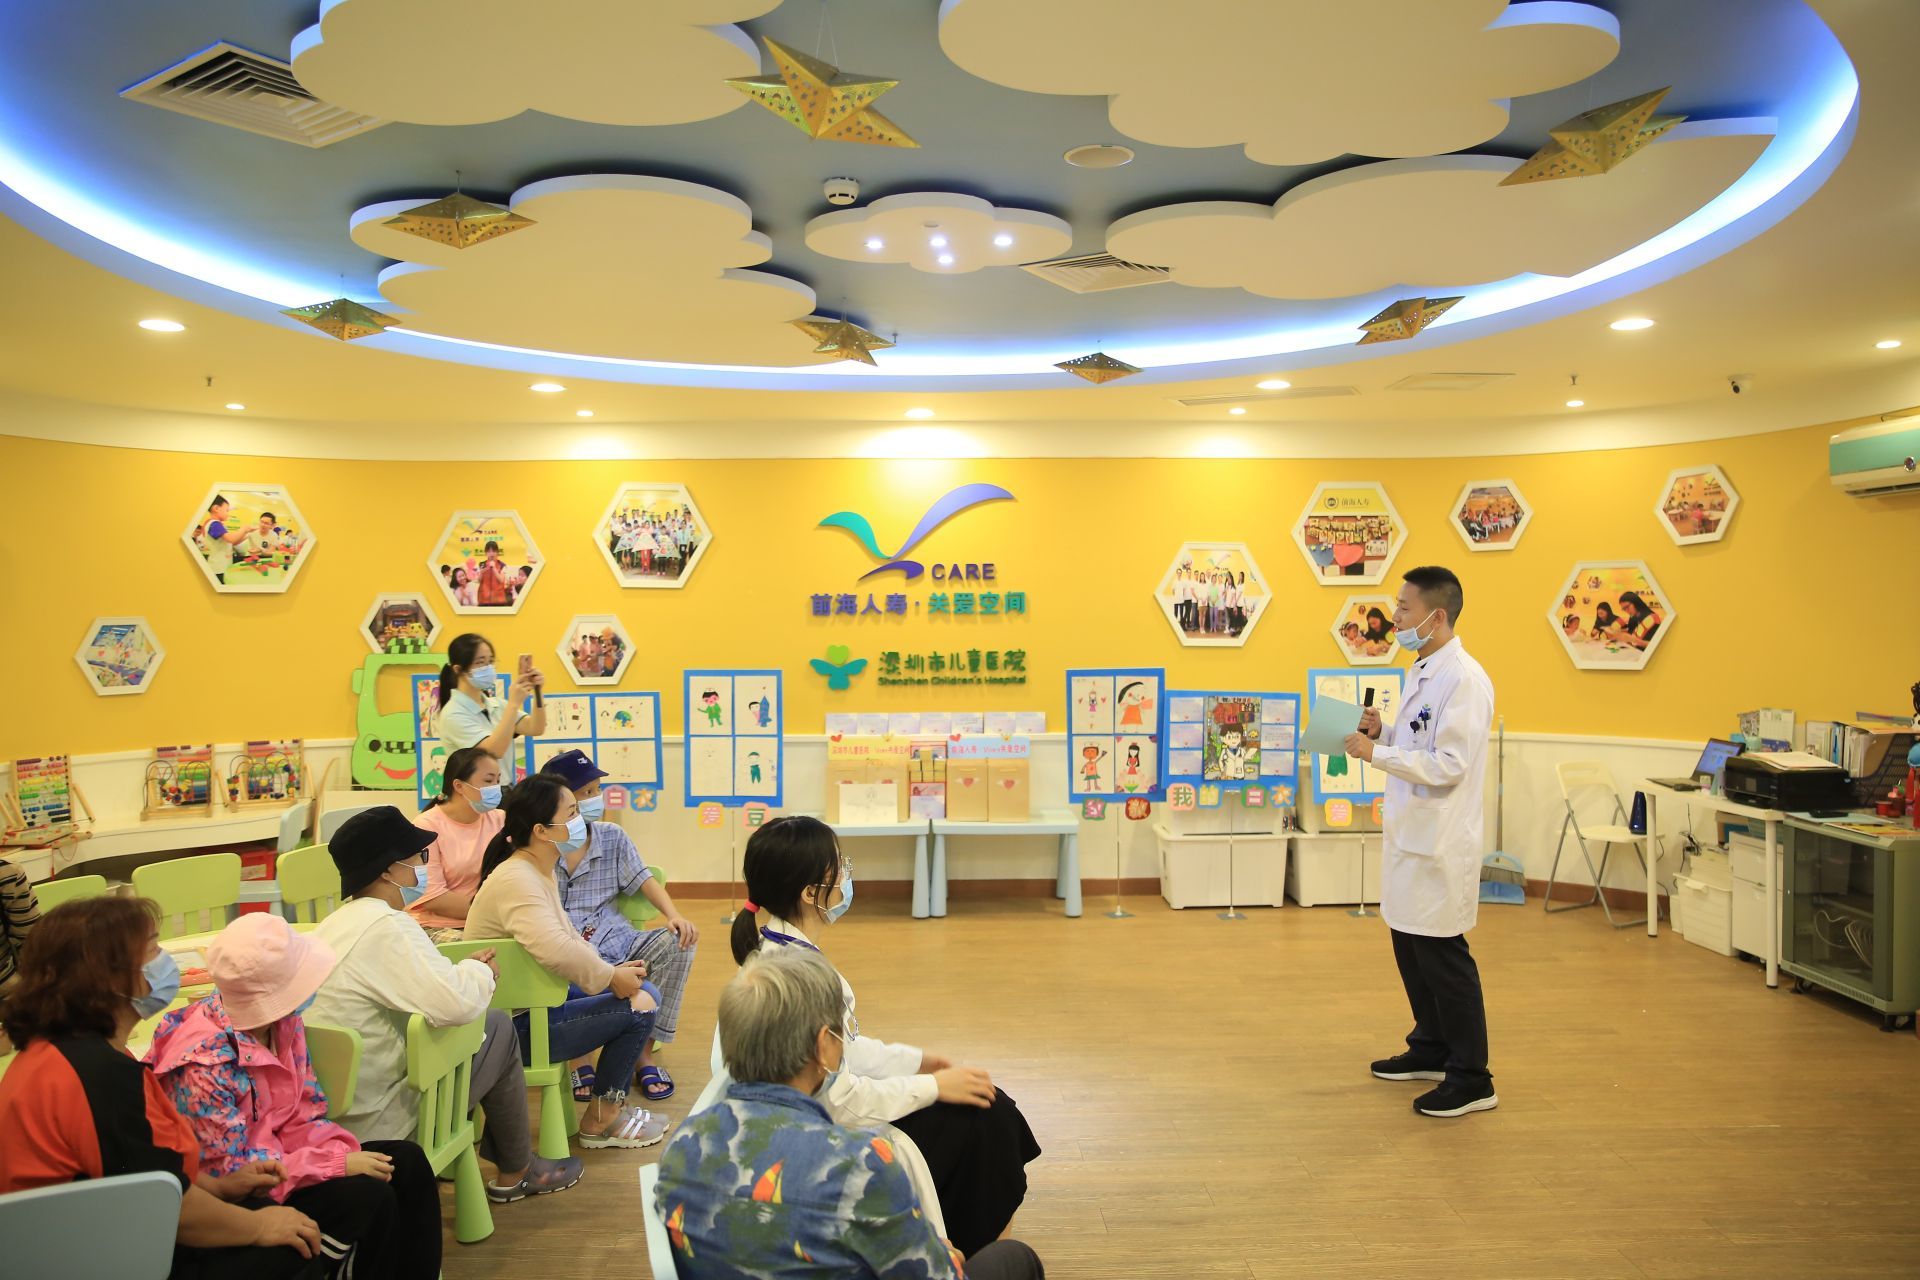 「致敬我的白衣爱豆」深圳市儿童医院关爱空间举行医师节活动